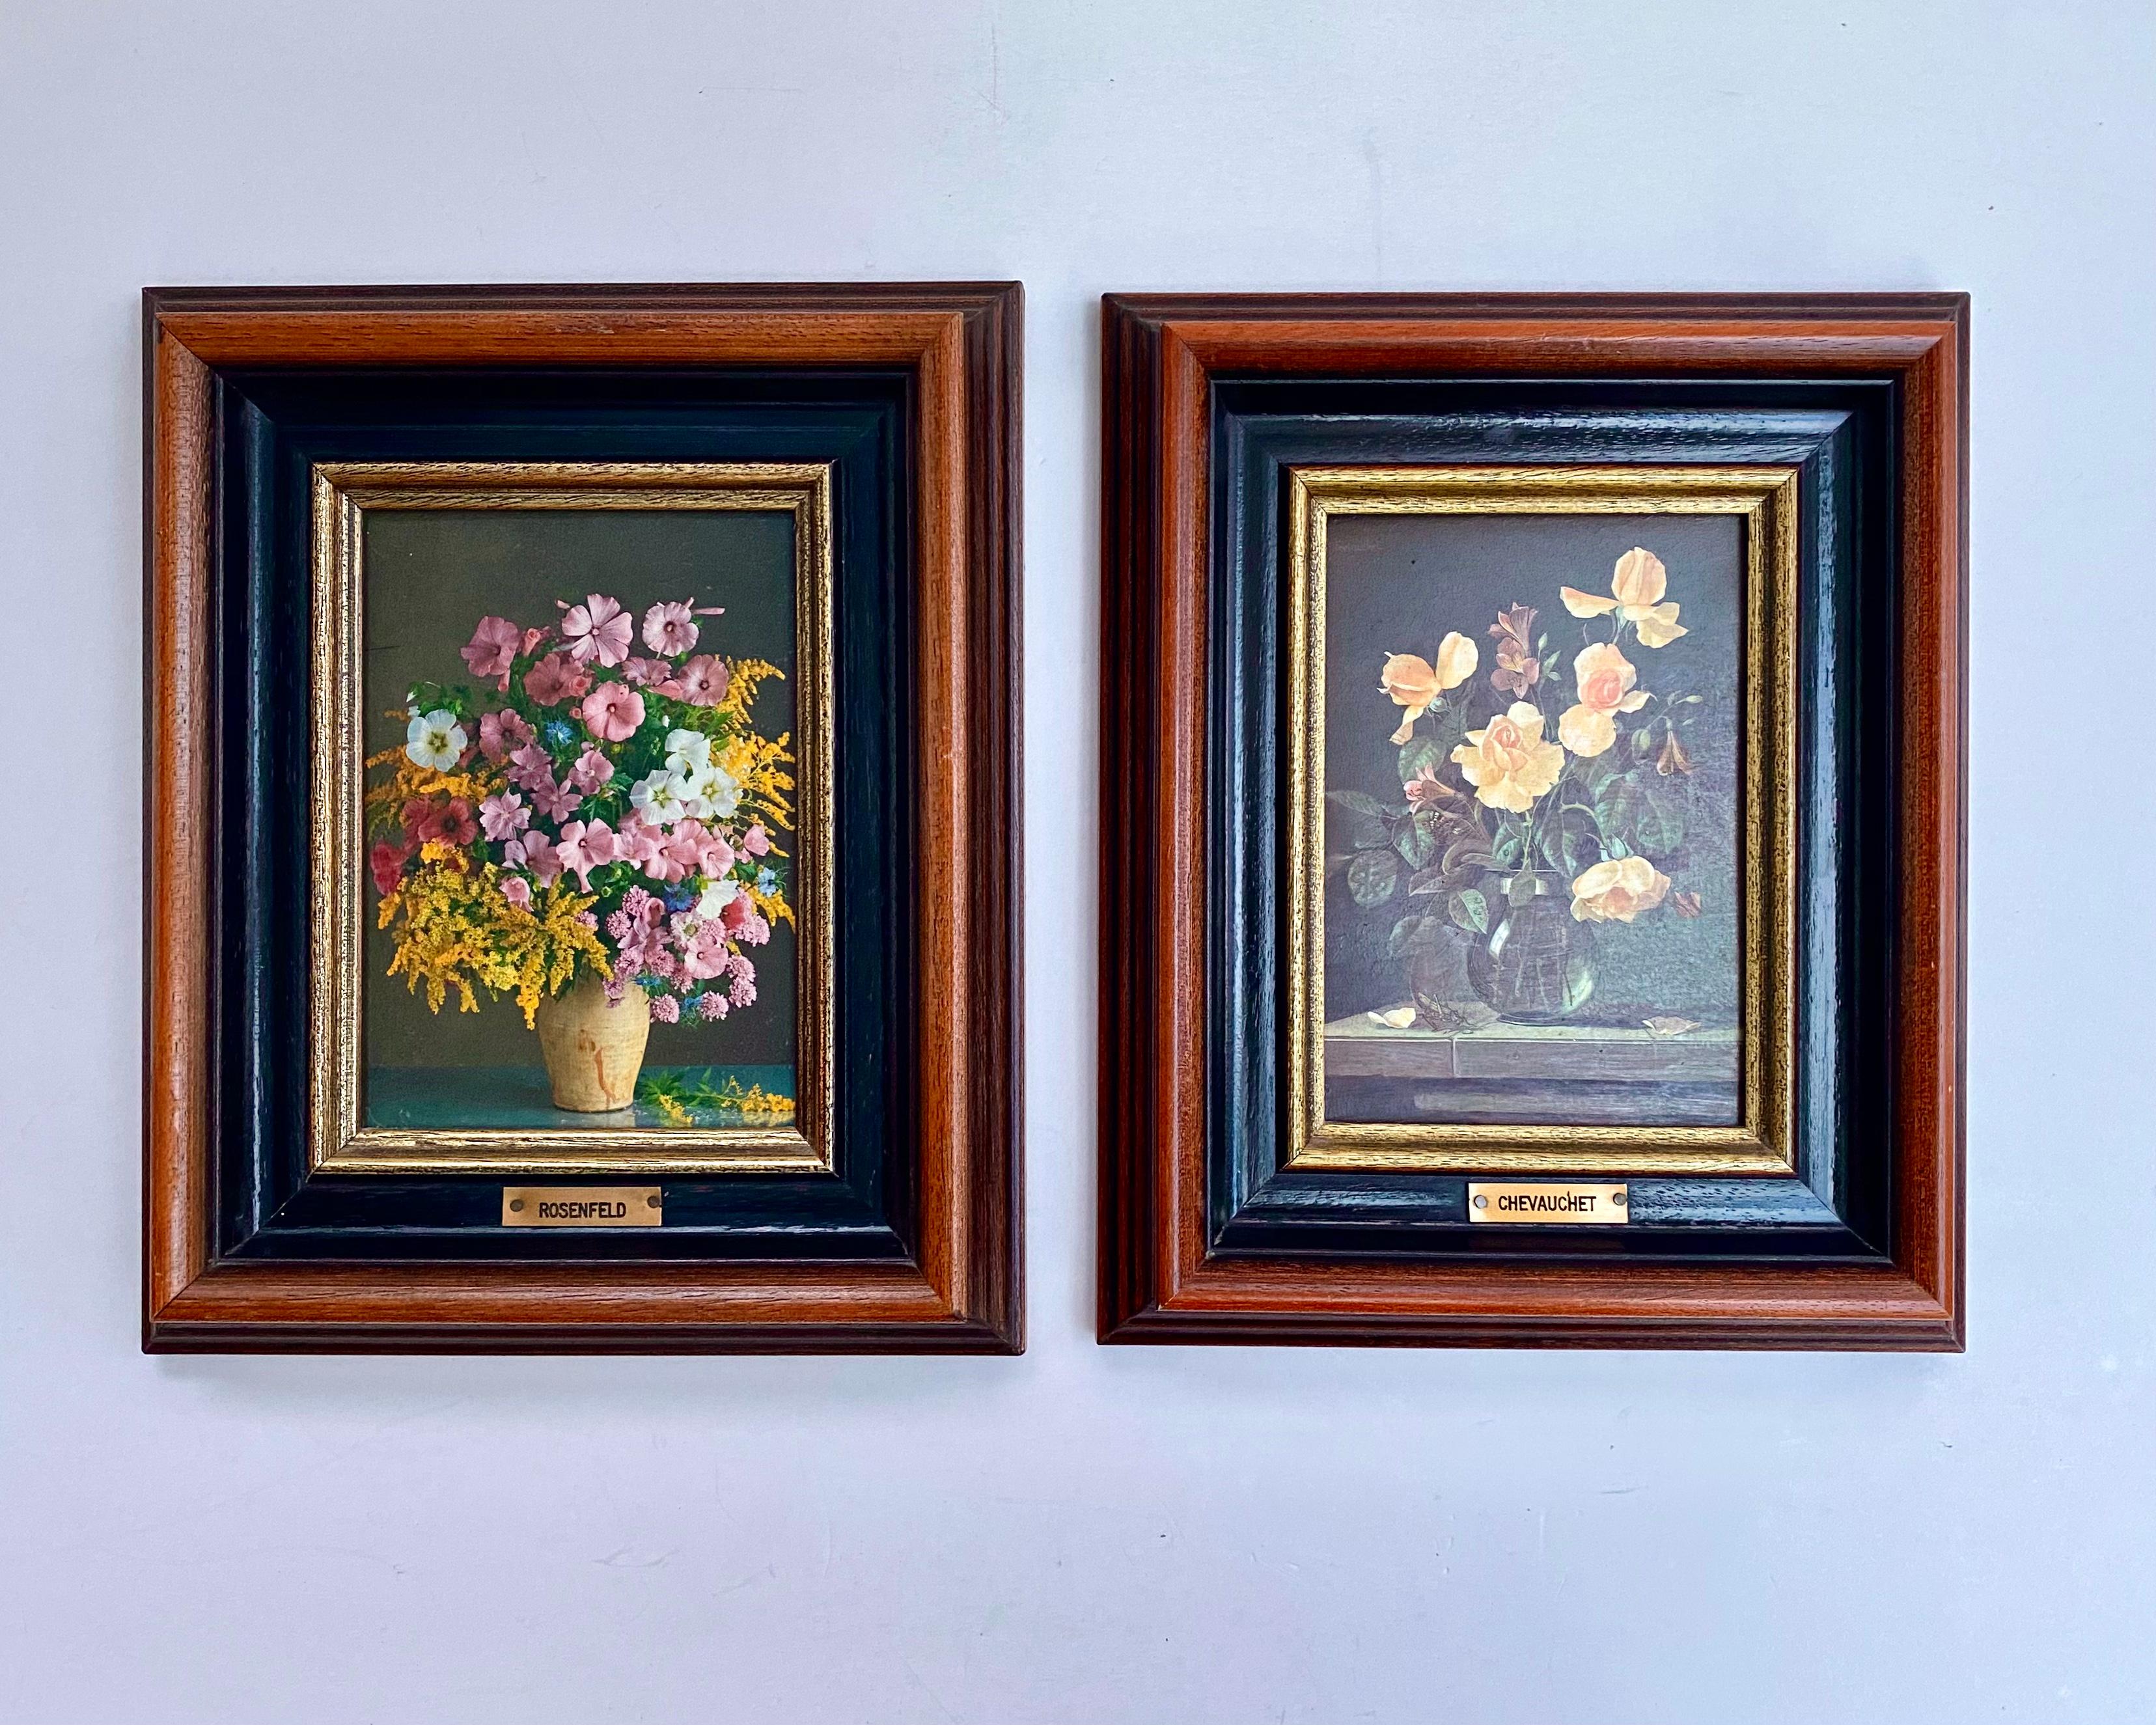 Vintage Wildflowers Paintings Still Life Art On Canvas Framed Flower Boho Chic Wall Art Decor Floral Painting. 

Les couleurs sont vives.

Les sujets sont des roses rouges classiques, des bourgeons, des feuilles et des tulipes, le tout dans des